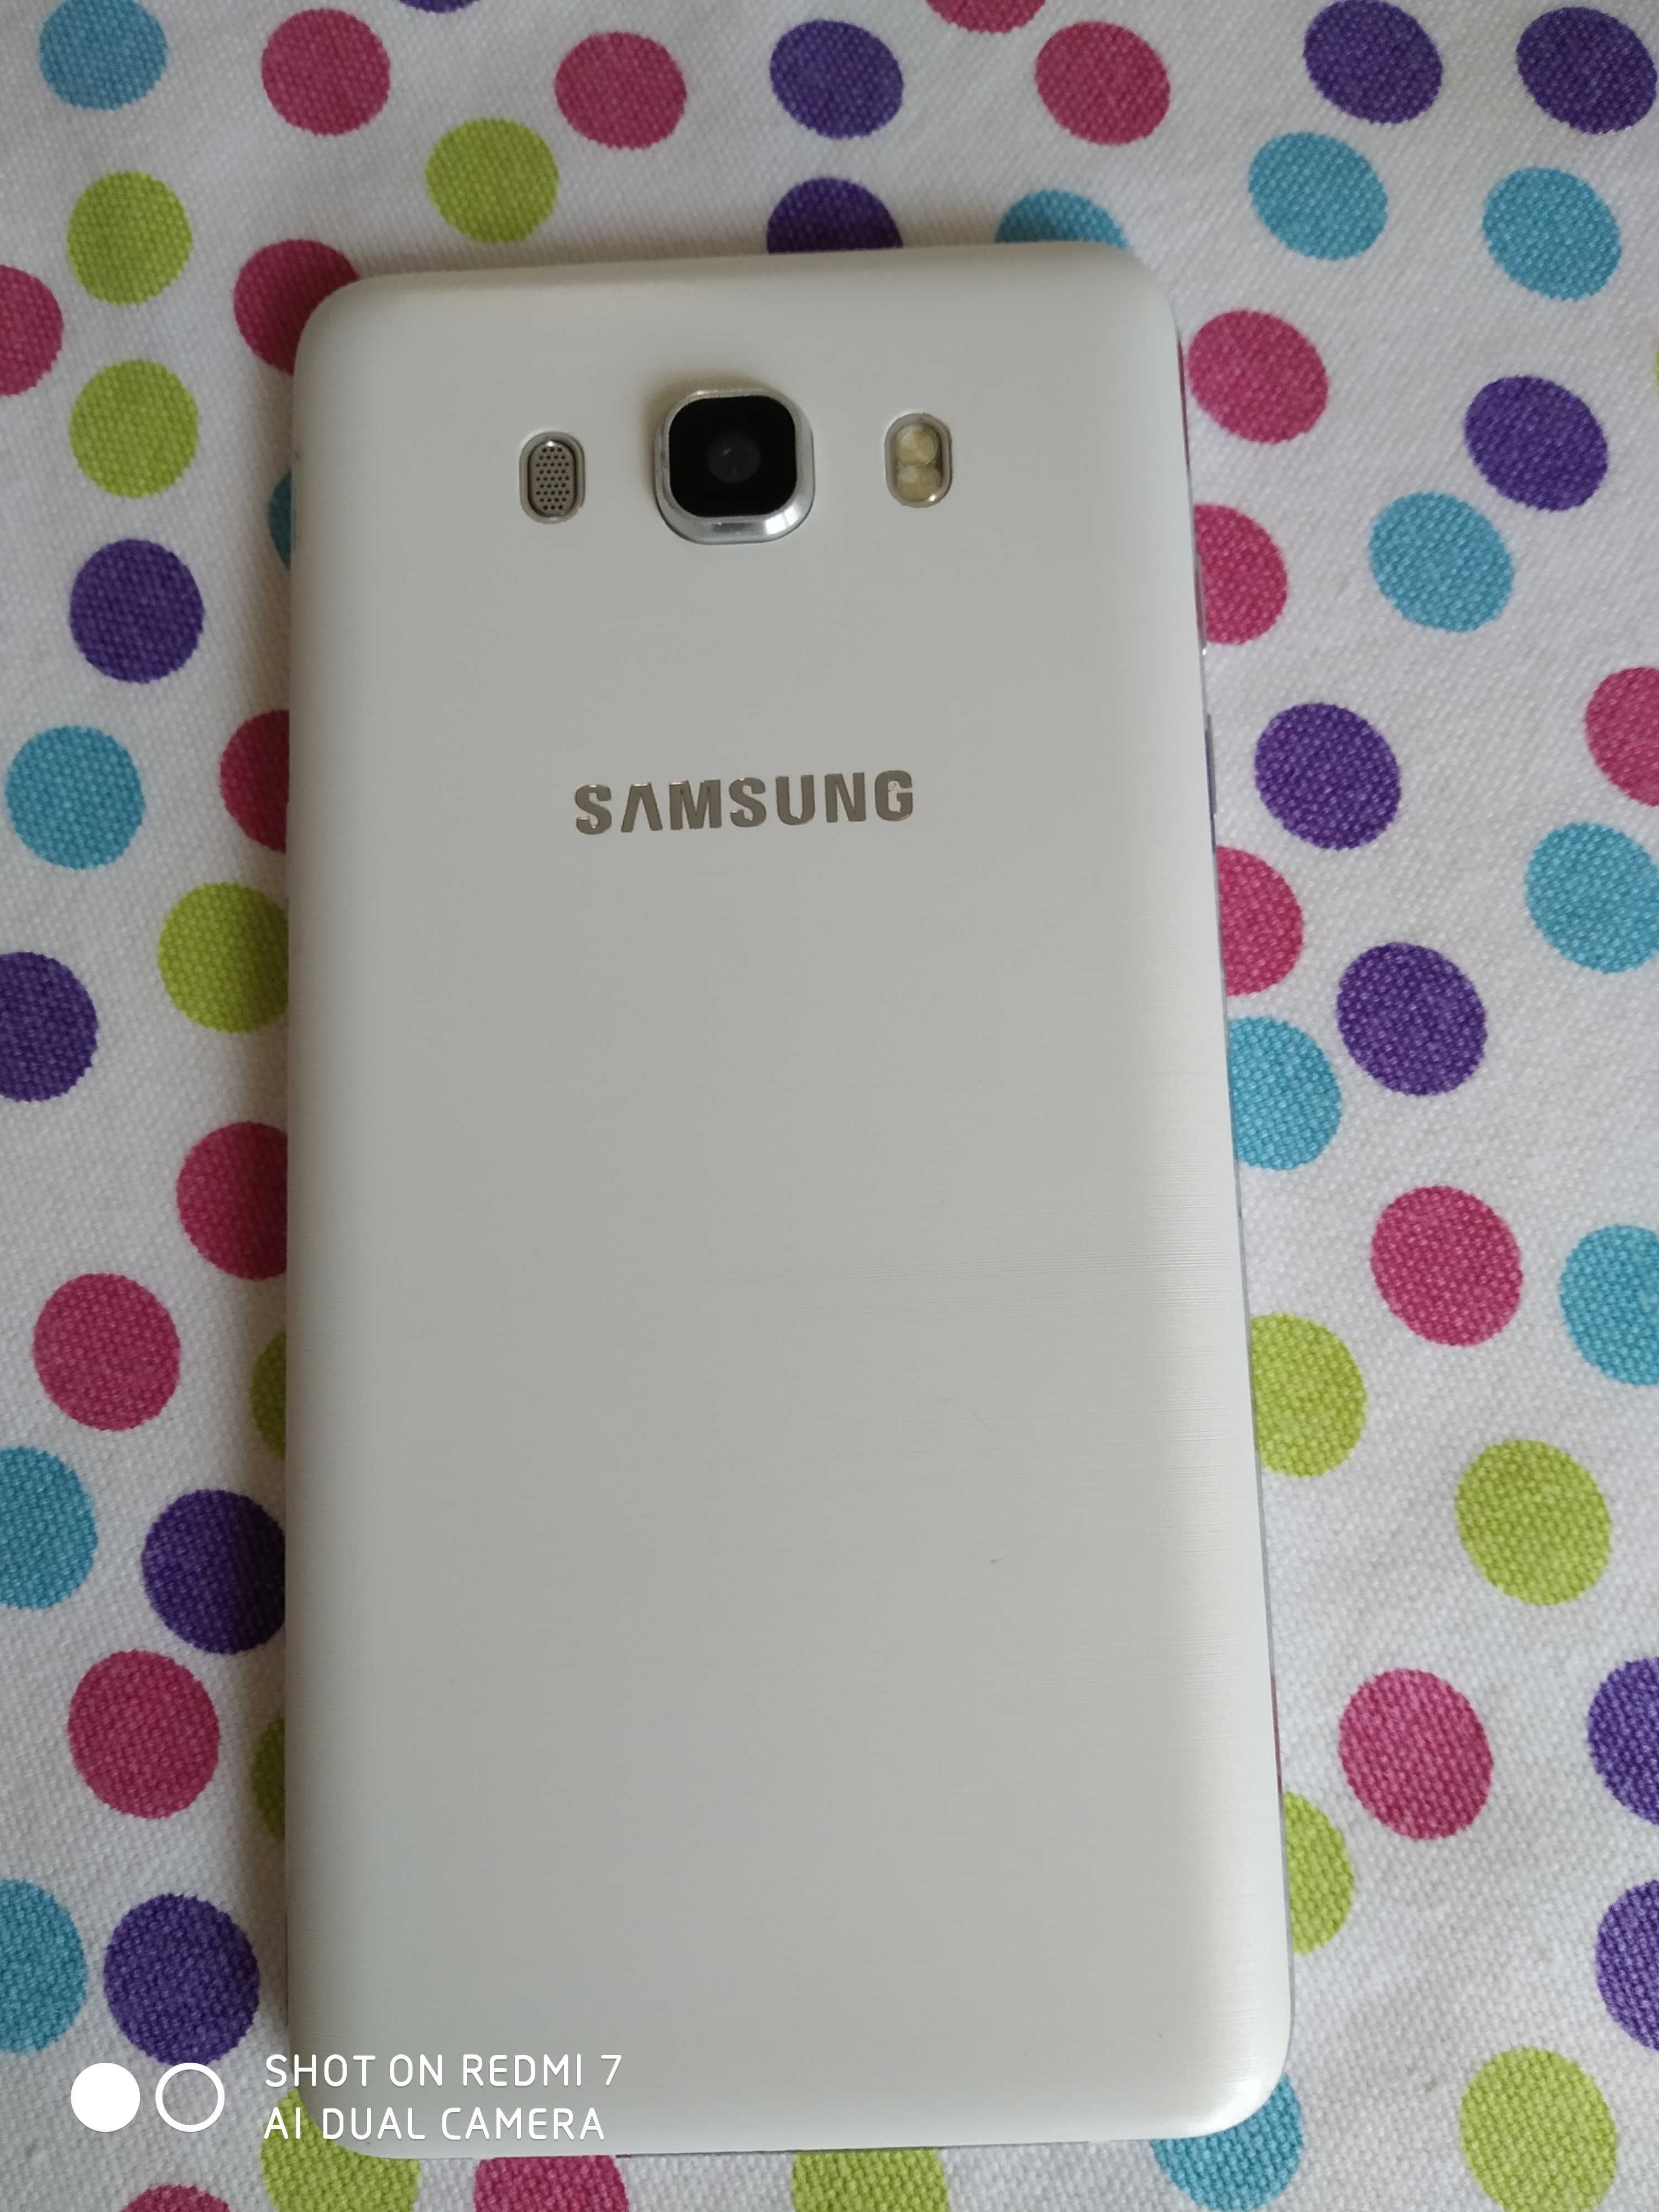 Telemóvel Samsung J7